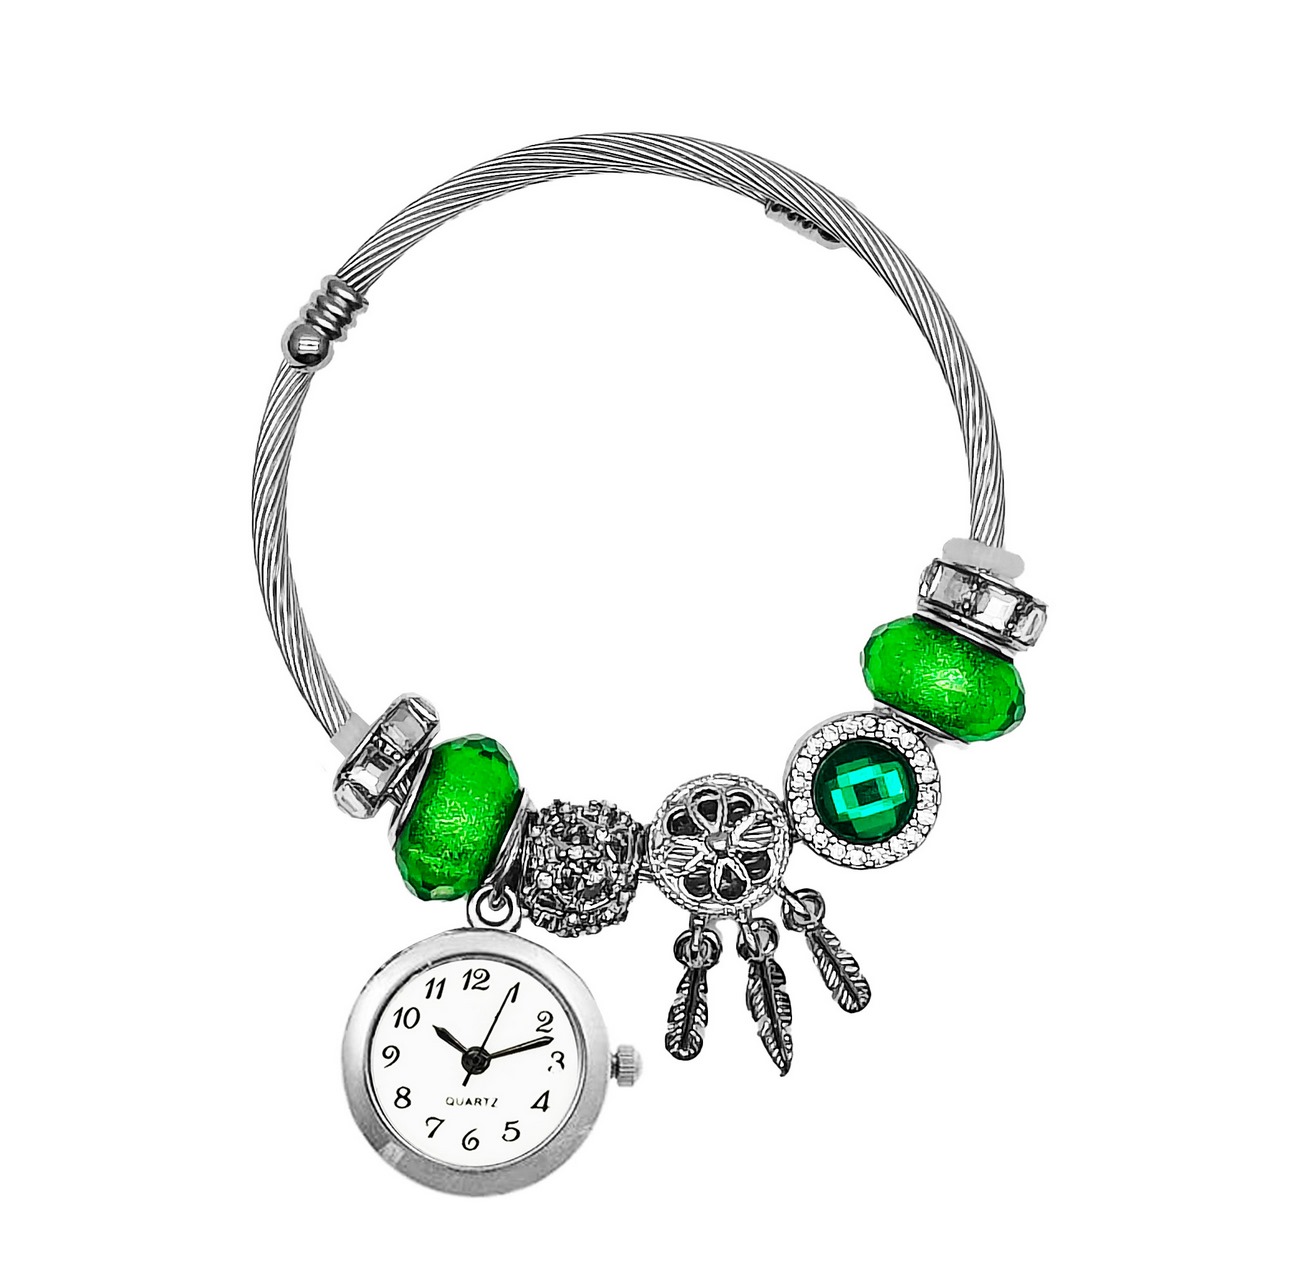 Reloj Mujer Dama Pulsera Acero Atrapasueños Verde + Estuche 